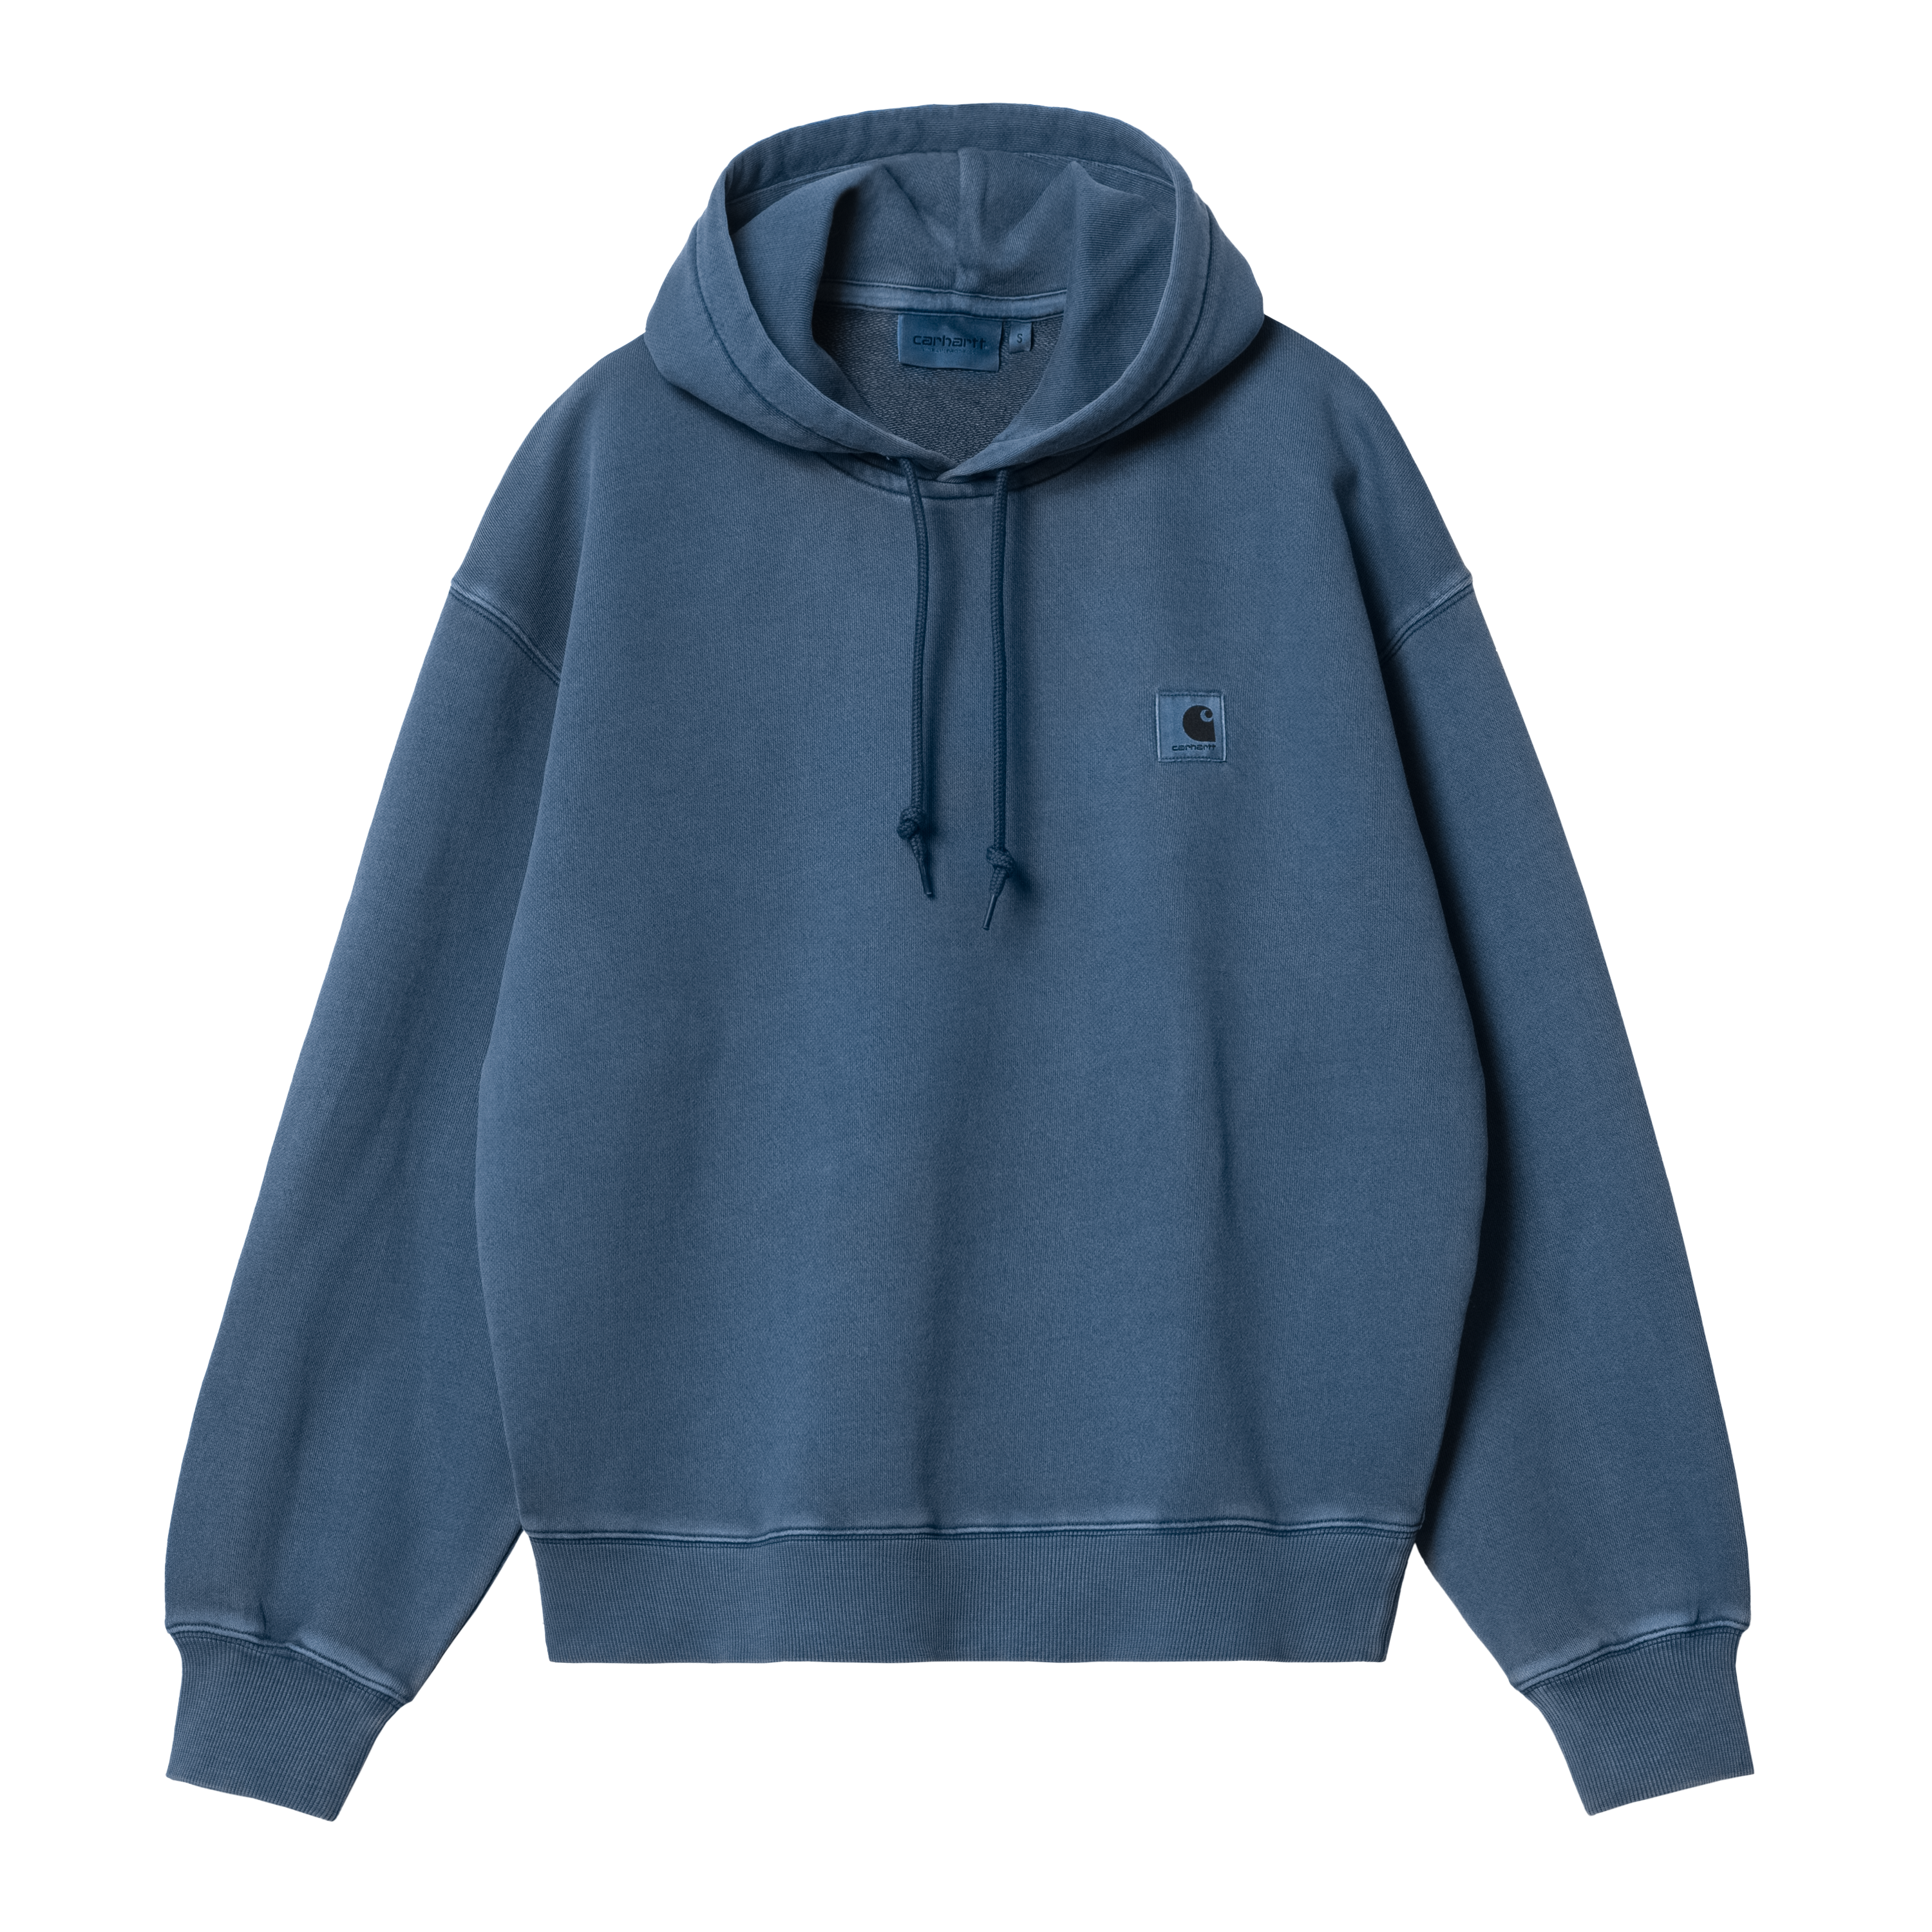 Carhartt WIP Women’s Hooded Nelson Sweatshirt in Blu